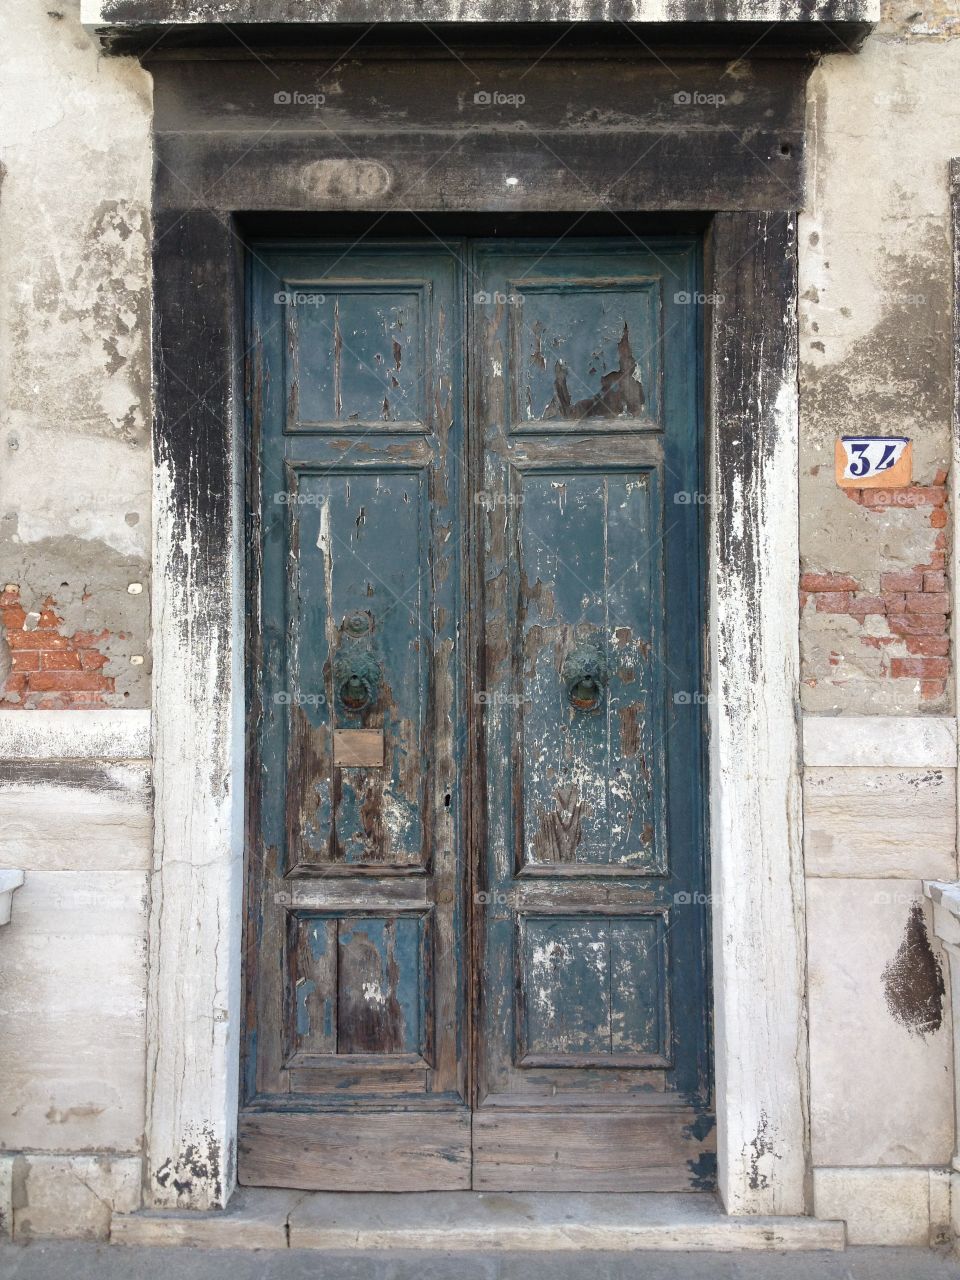 Venetian doorways, Venice, Italy 